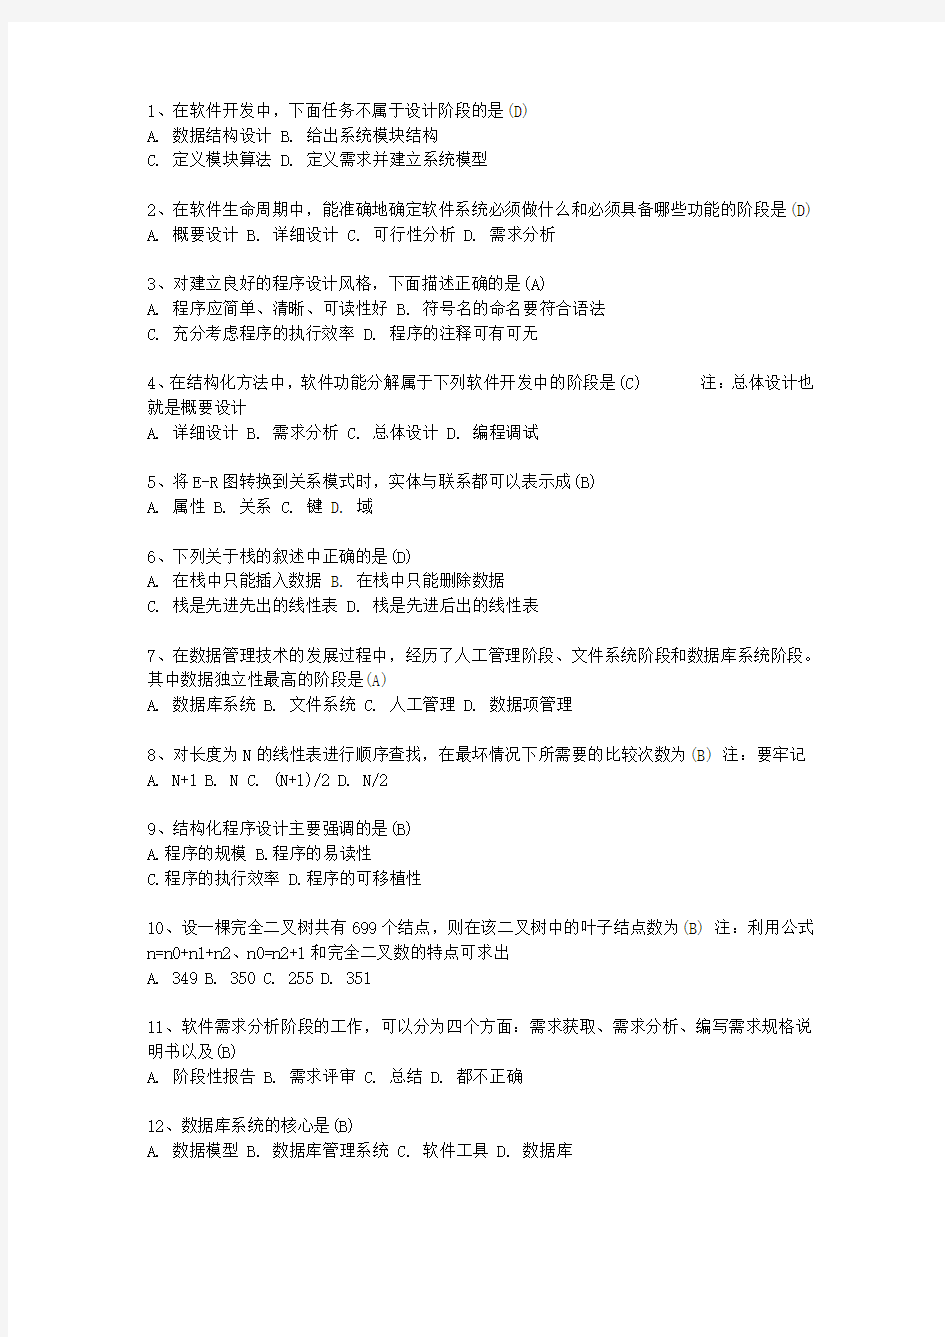 2013甘肃省计算机等级考试二级考试技巧、答题原则